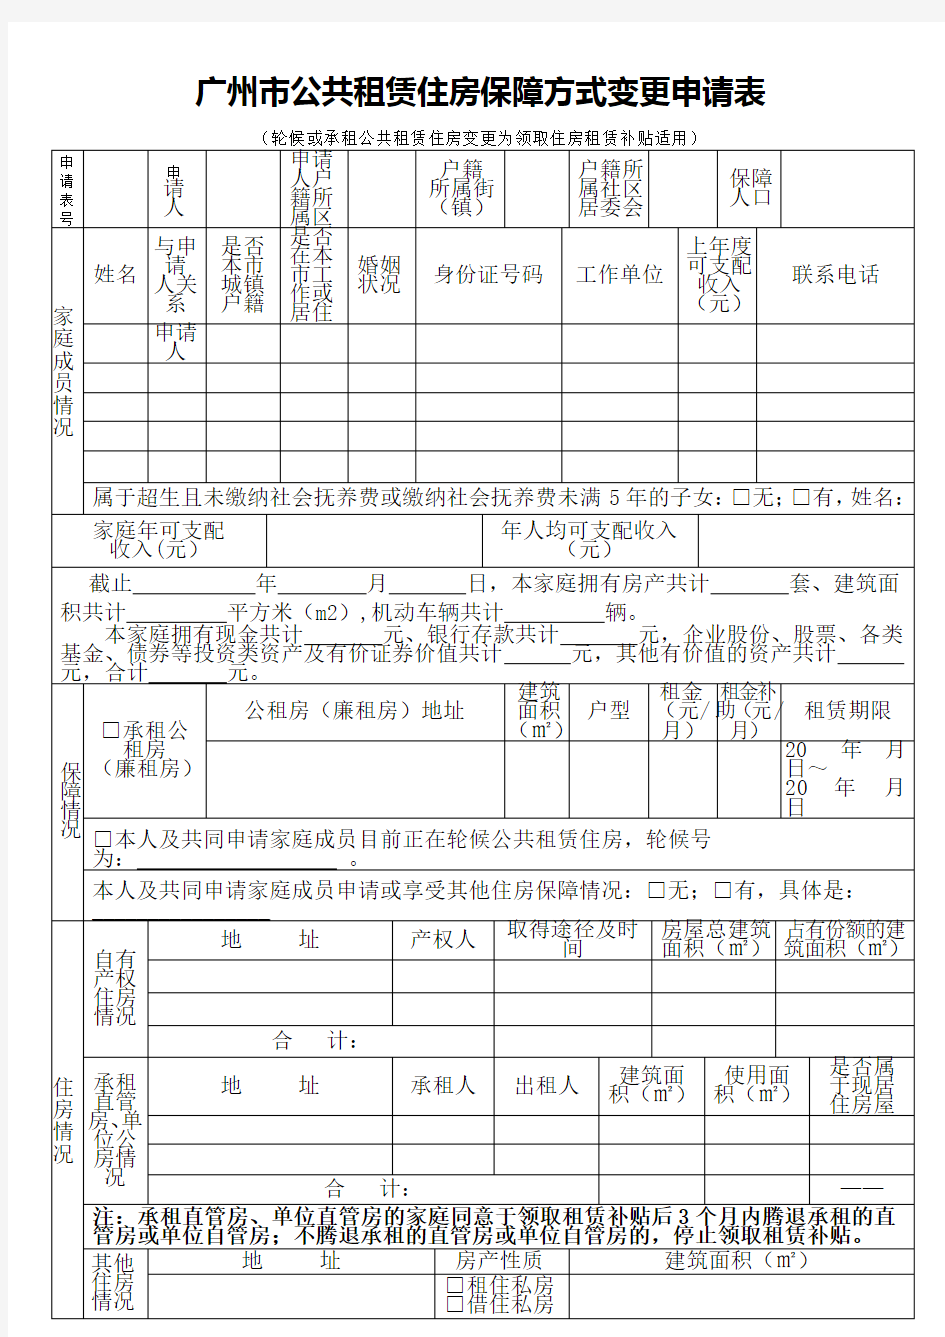 广州市公共租赁住房保障方式变更申请表[001]